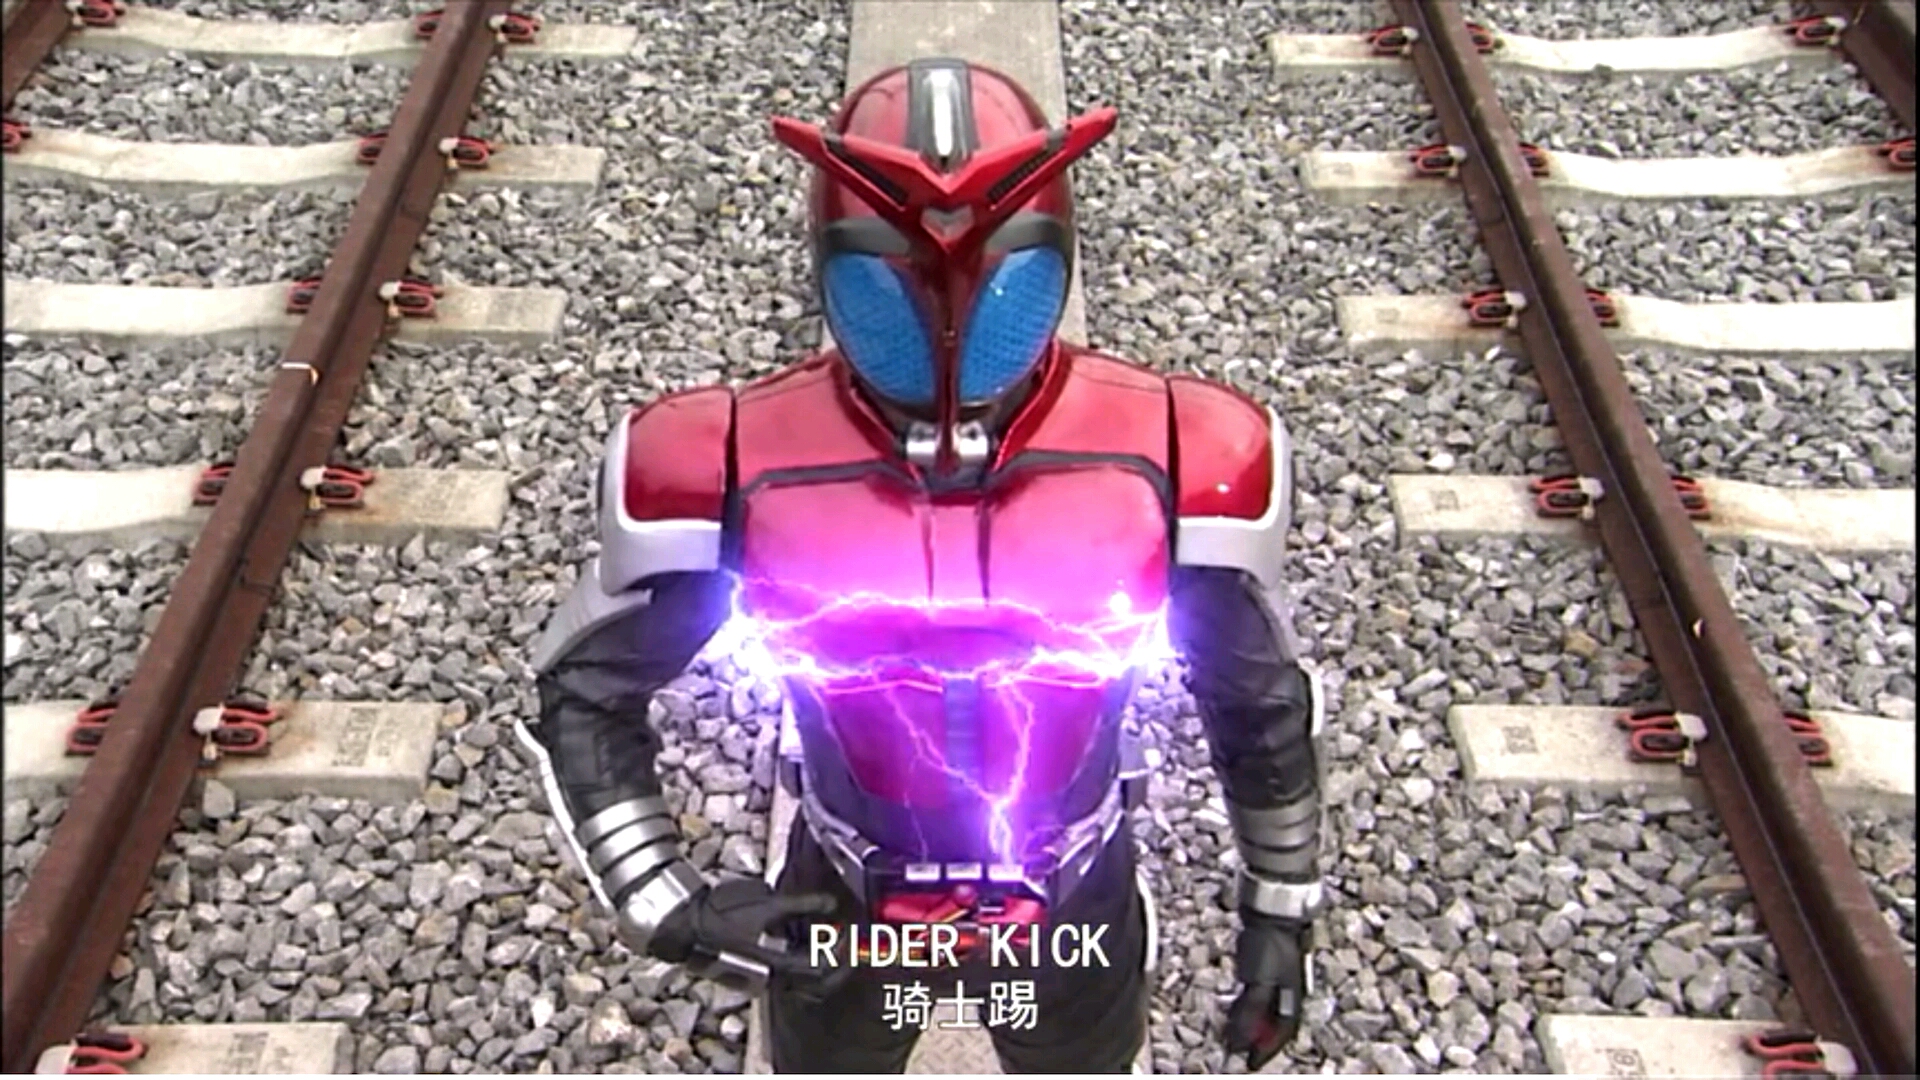 假面骑士kabuto one two three rider kick